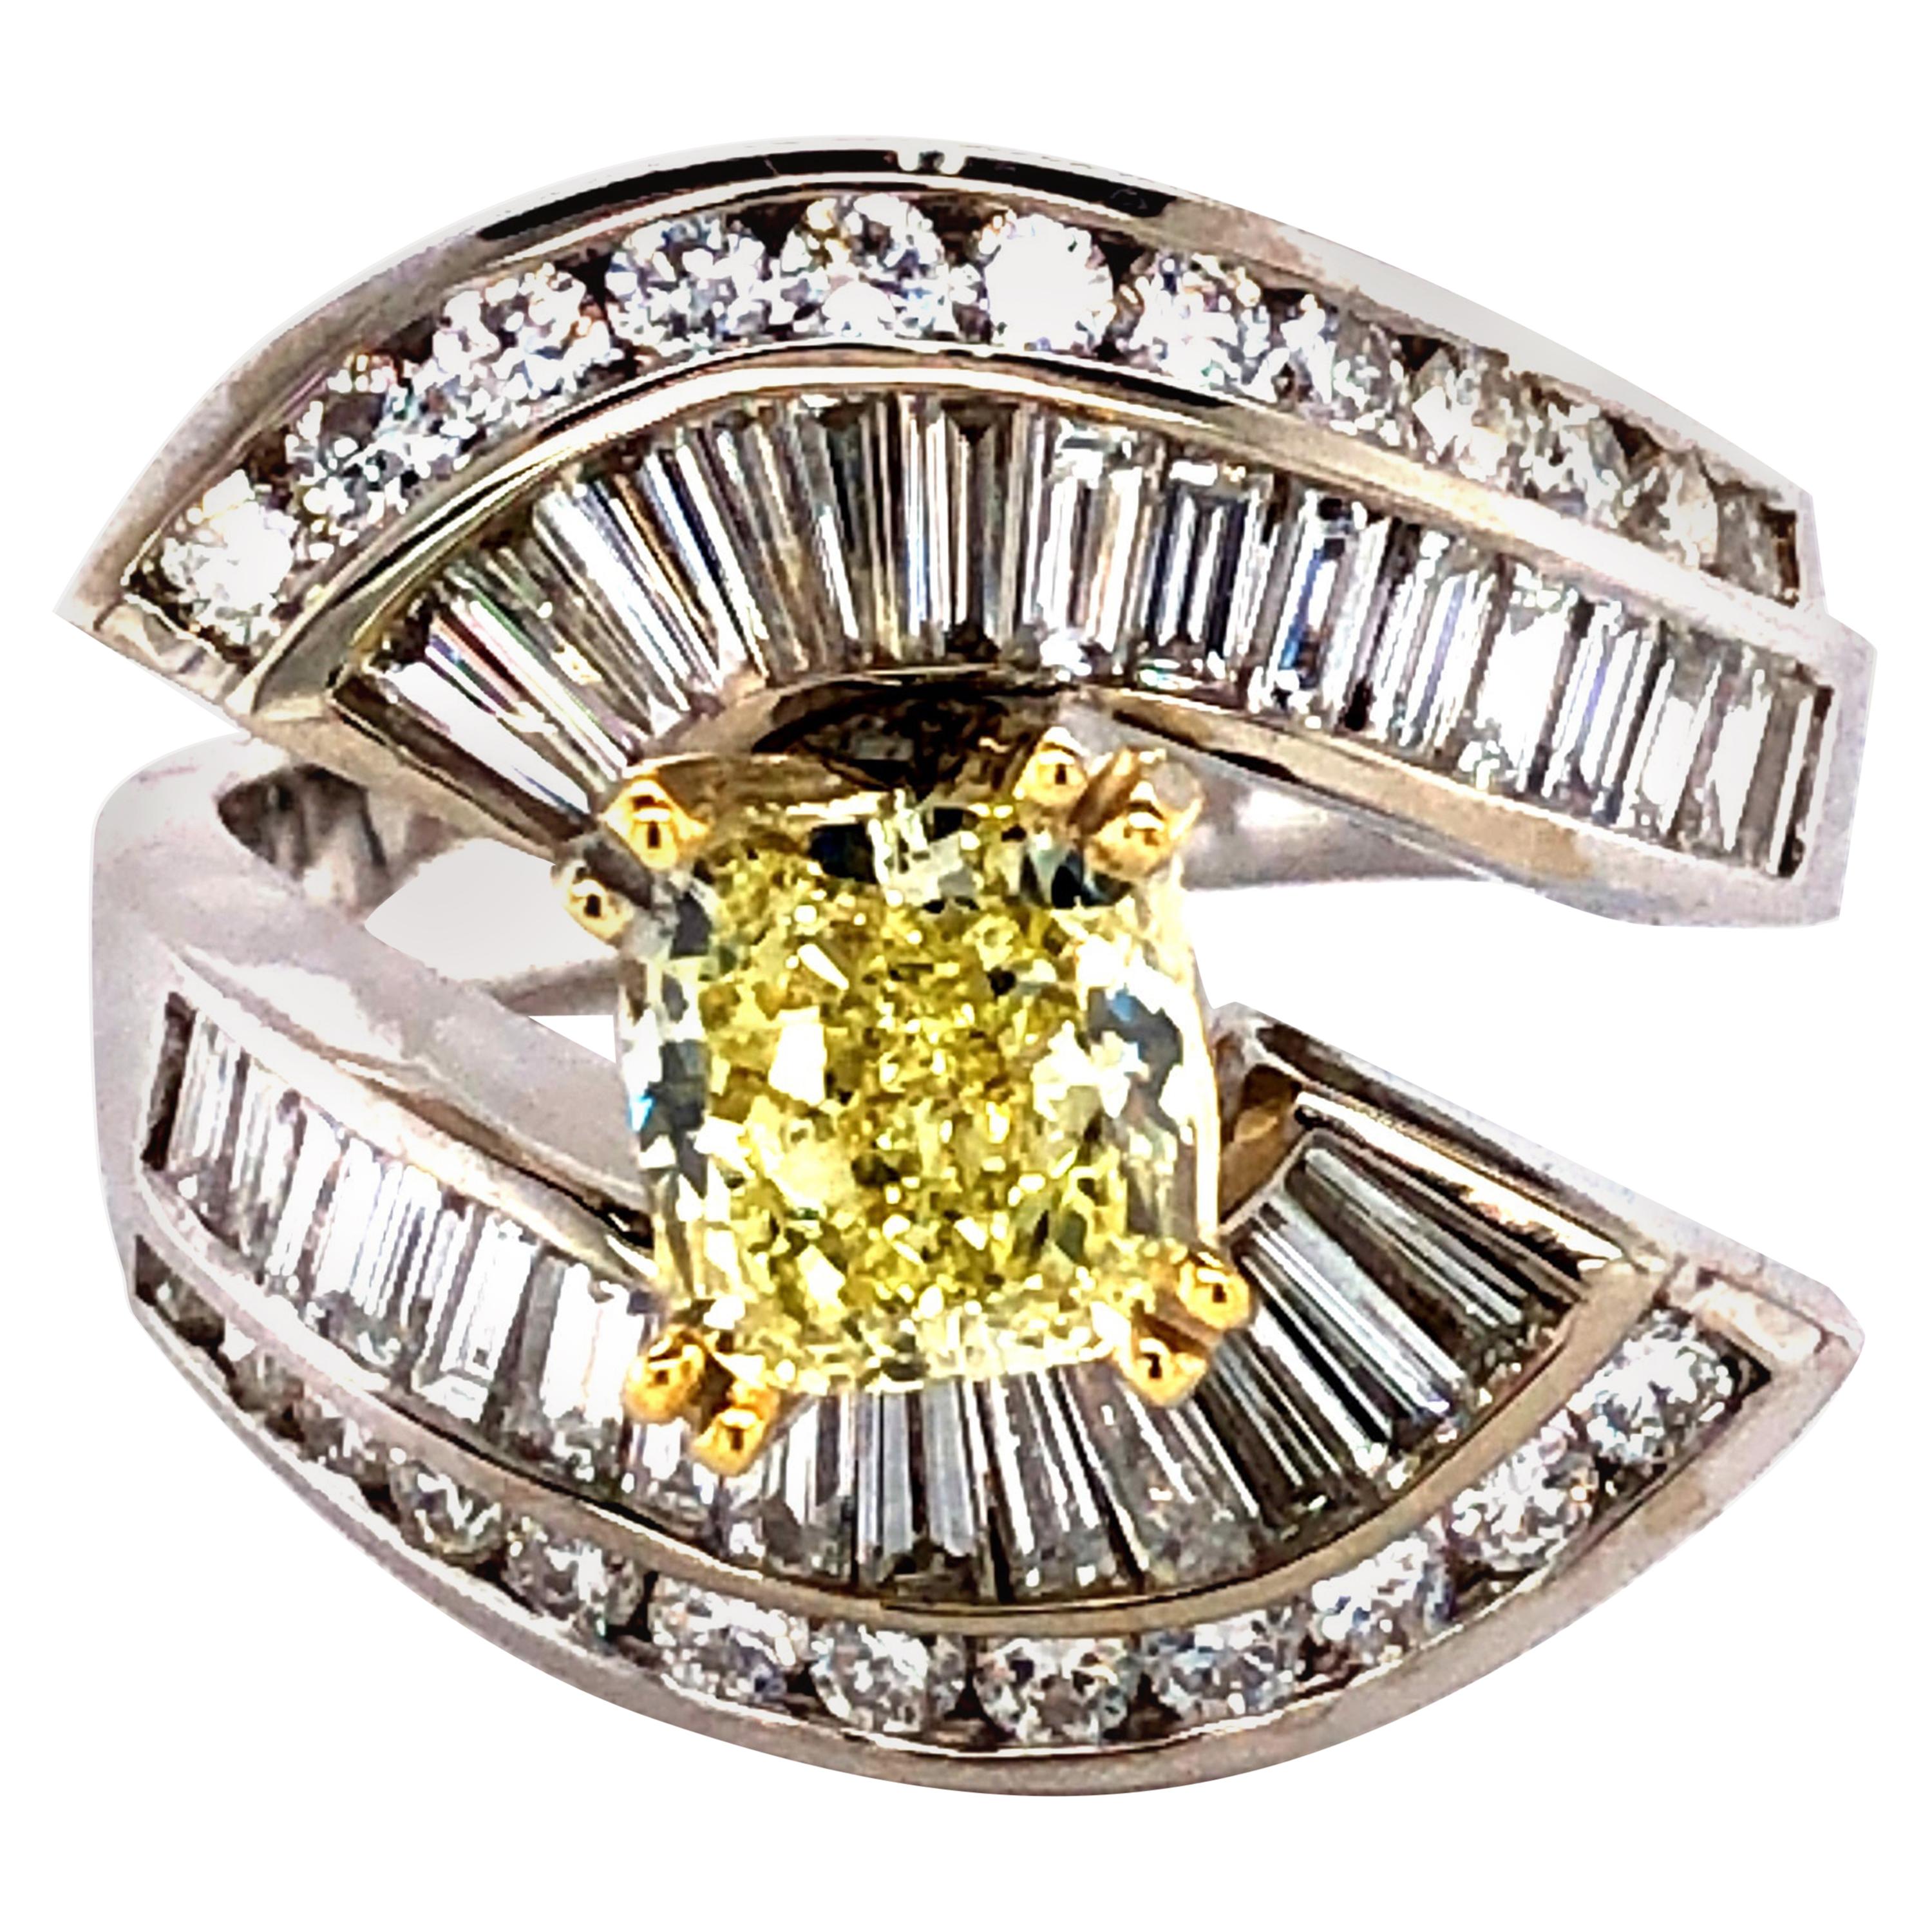 4 Carat Fancy Yellow and White Diamonds Engagement Ring, 18 Karat Gold